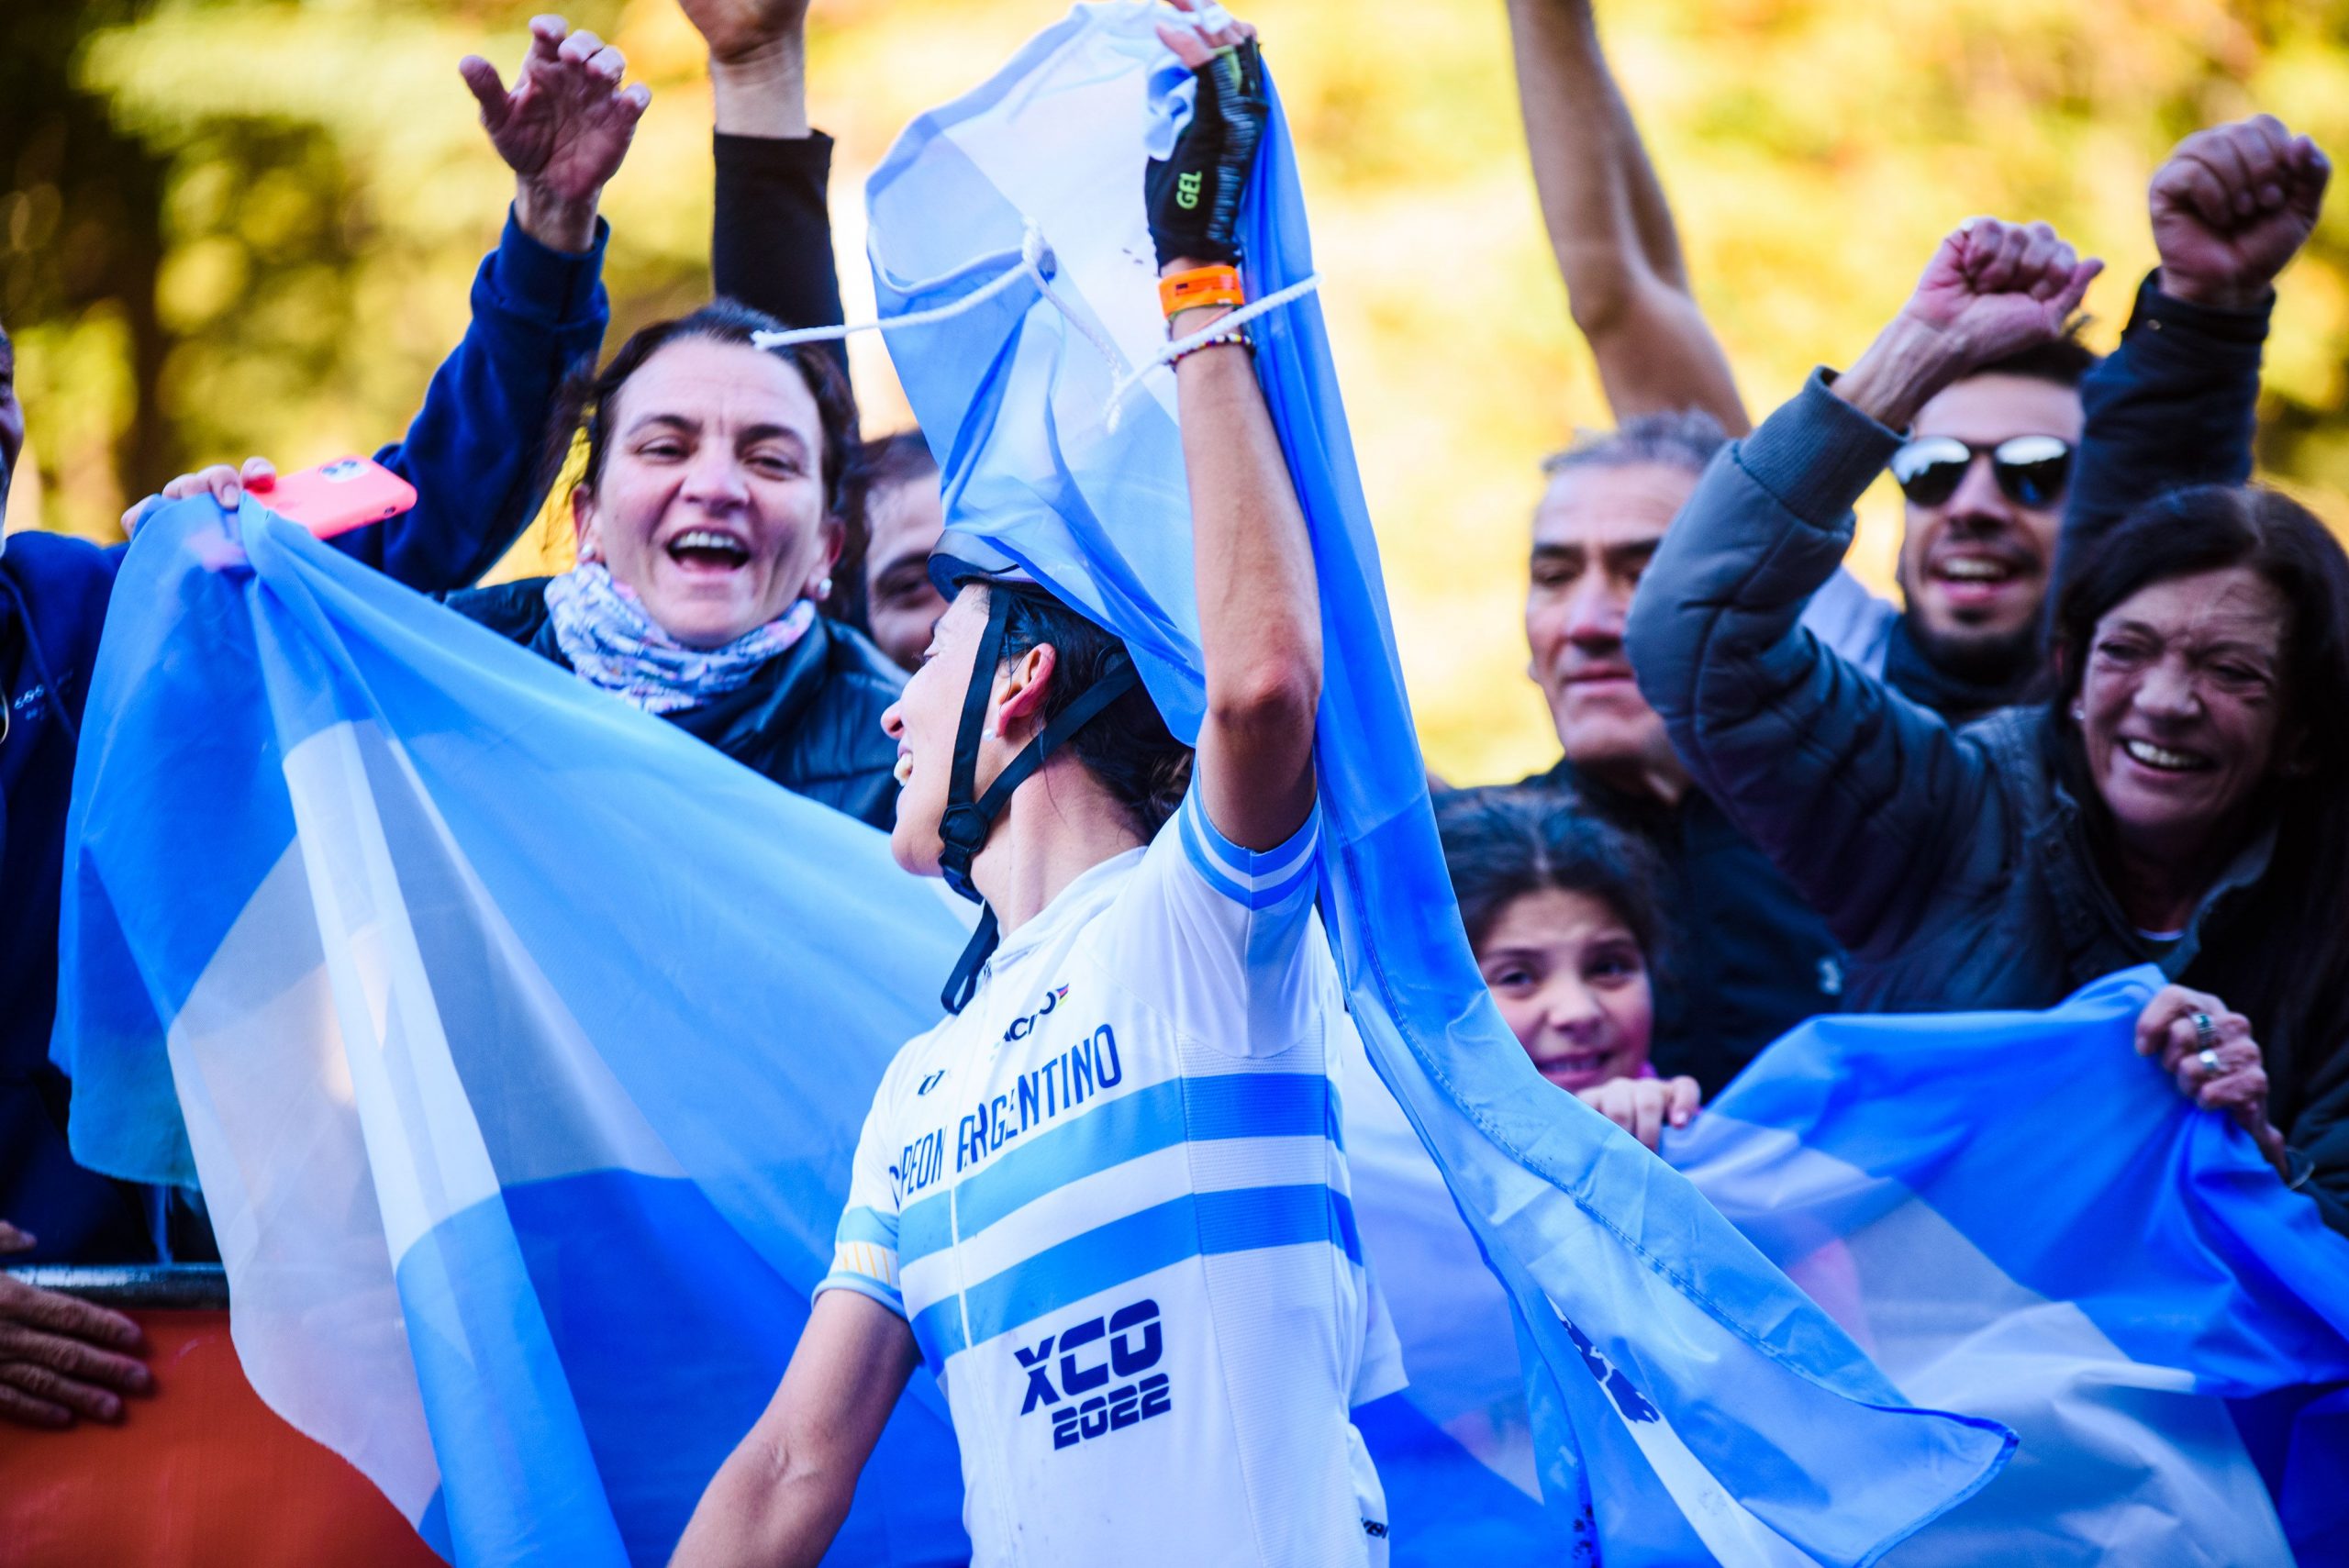 La argentina Carolina Maldonado se quedó con el primer puesto en Máster A del Campeonato del Mundo MTB en Villa la Angostura thumbnail